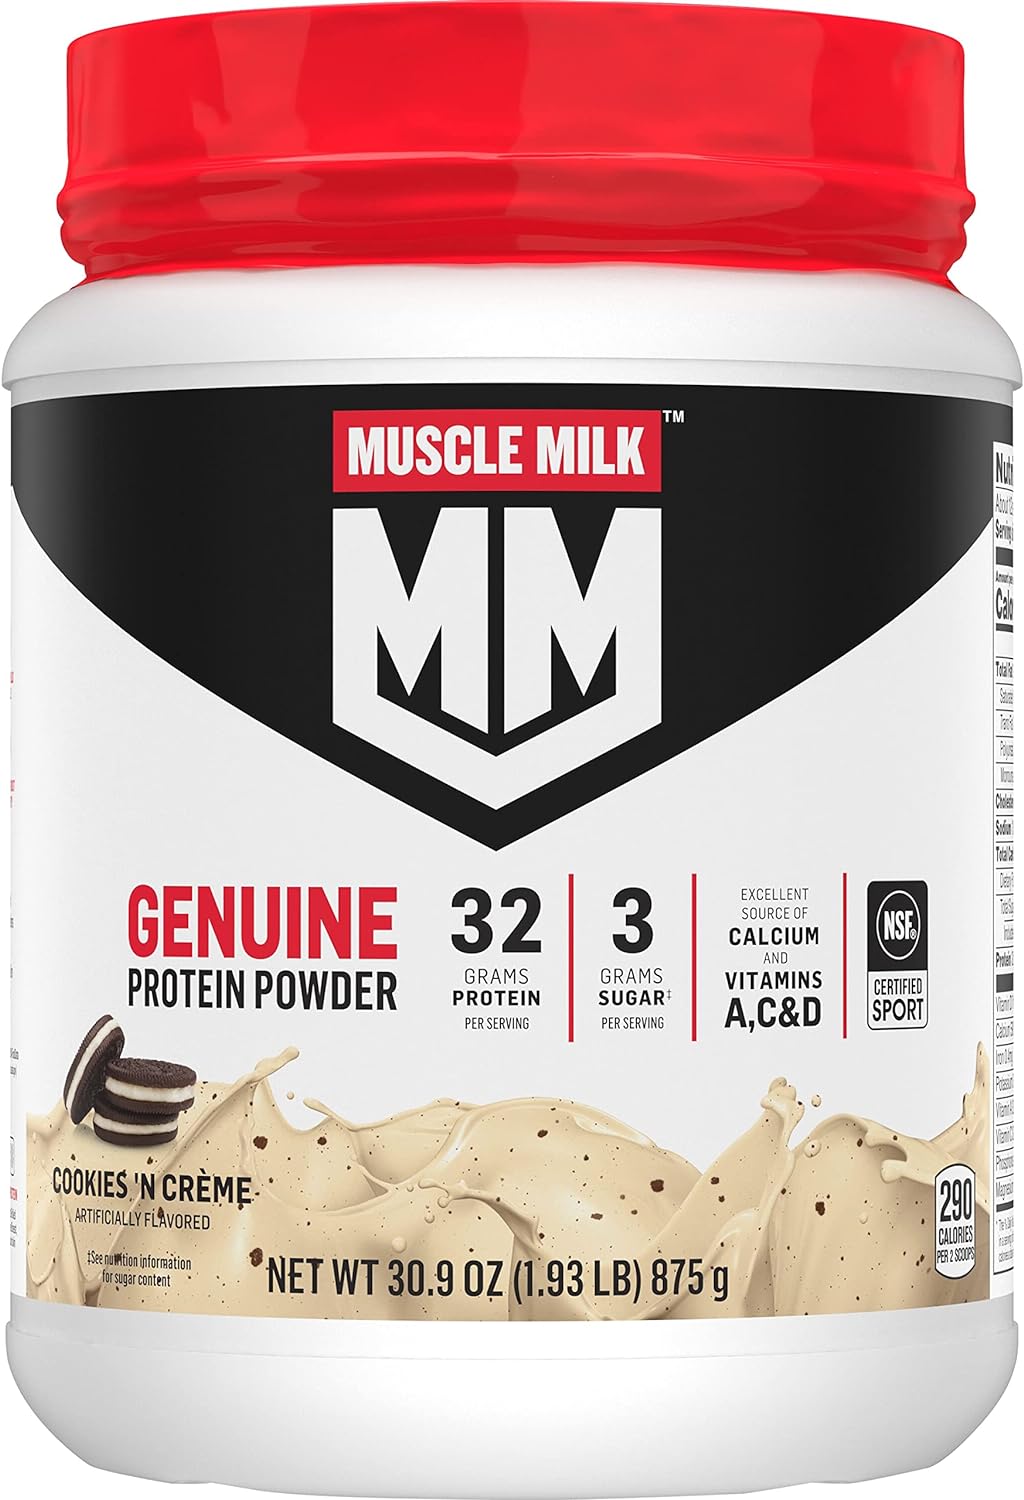 Muscle Milk Genuine Protein Powder, Cookies 'N Crme, 1.93 Pounds, 12